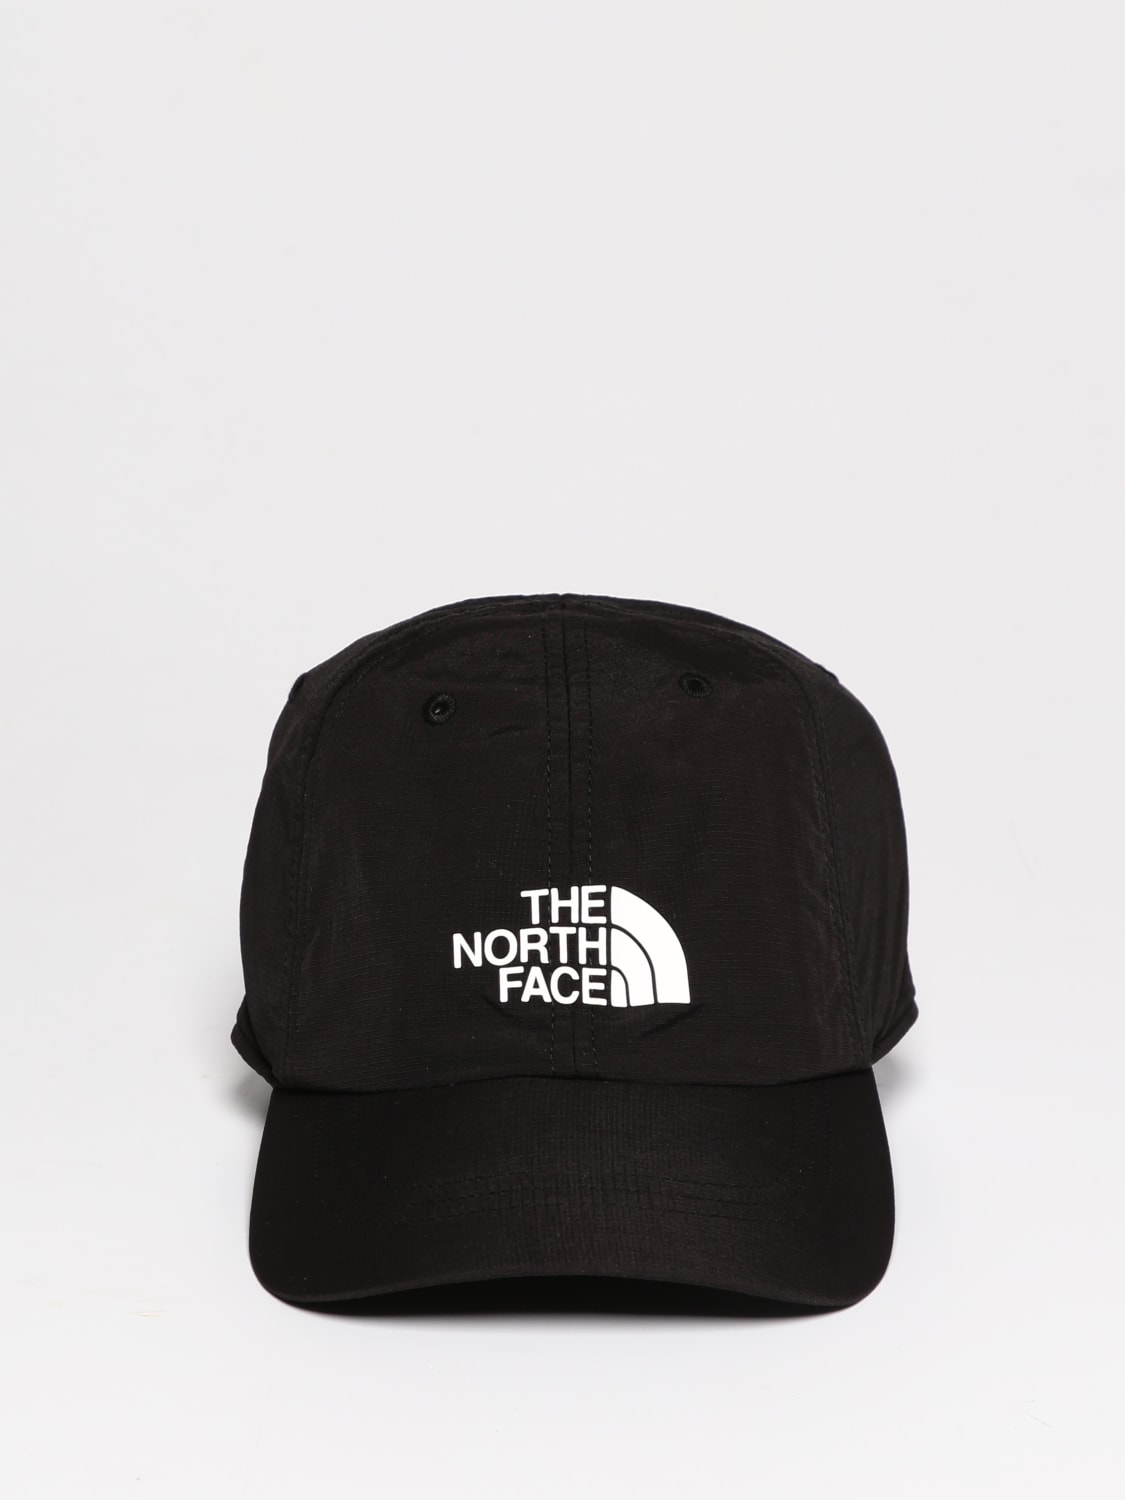 The North Face Outlet: Chapeau homme - Noir  Chapeau The North Face  NF0A5FXL en ligne sur